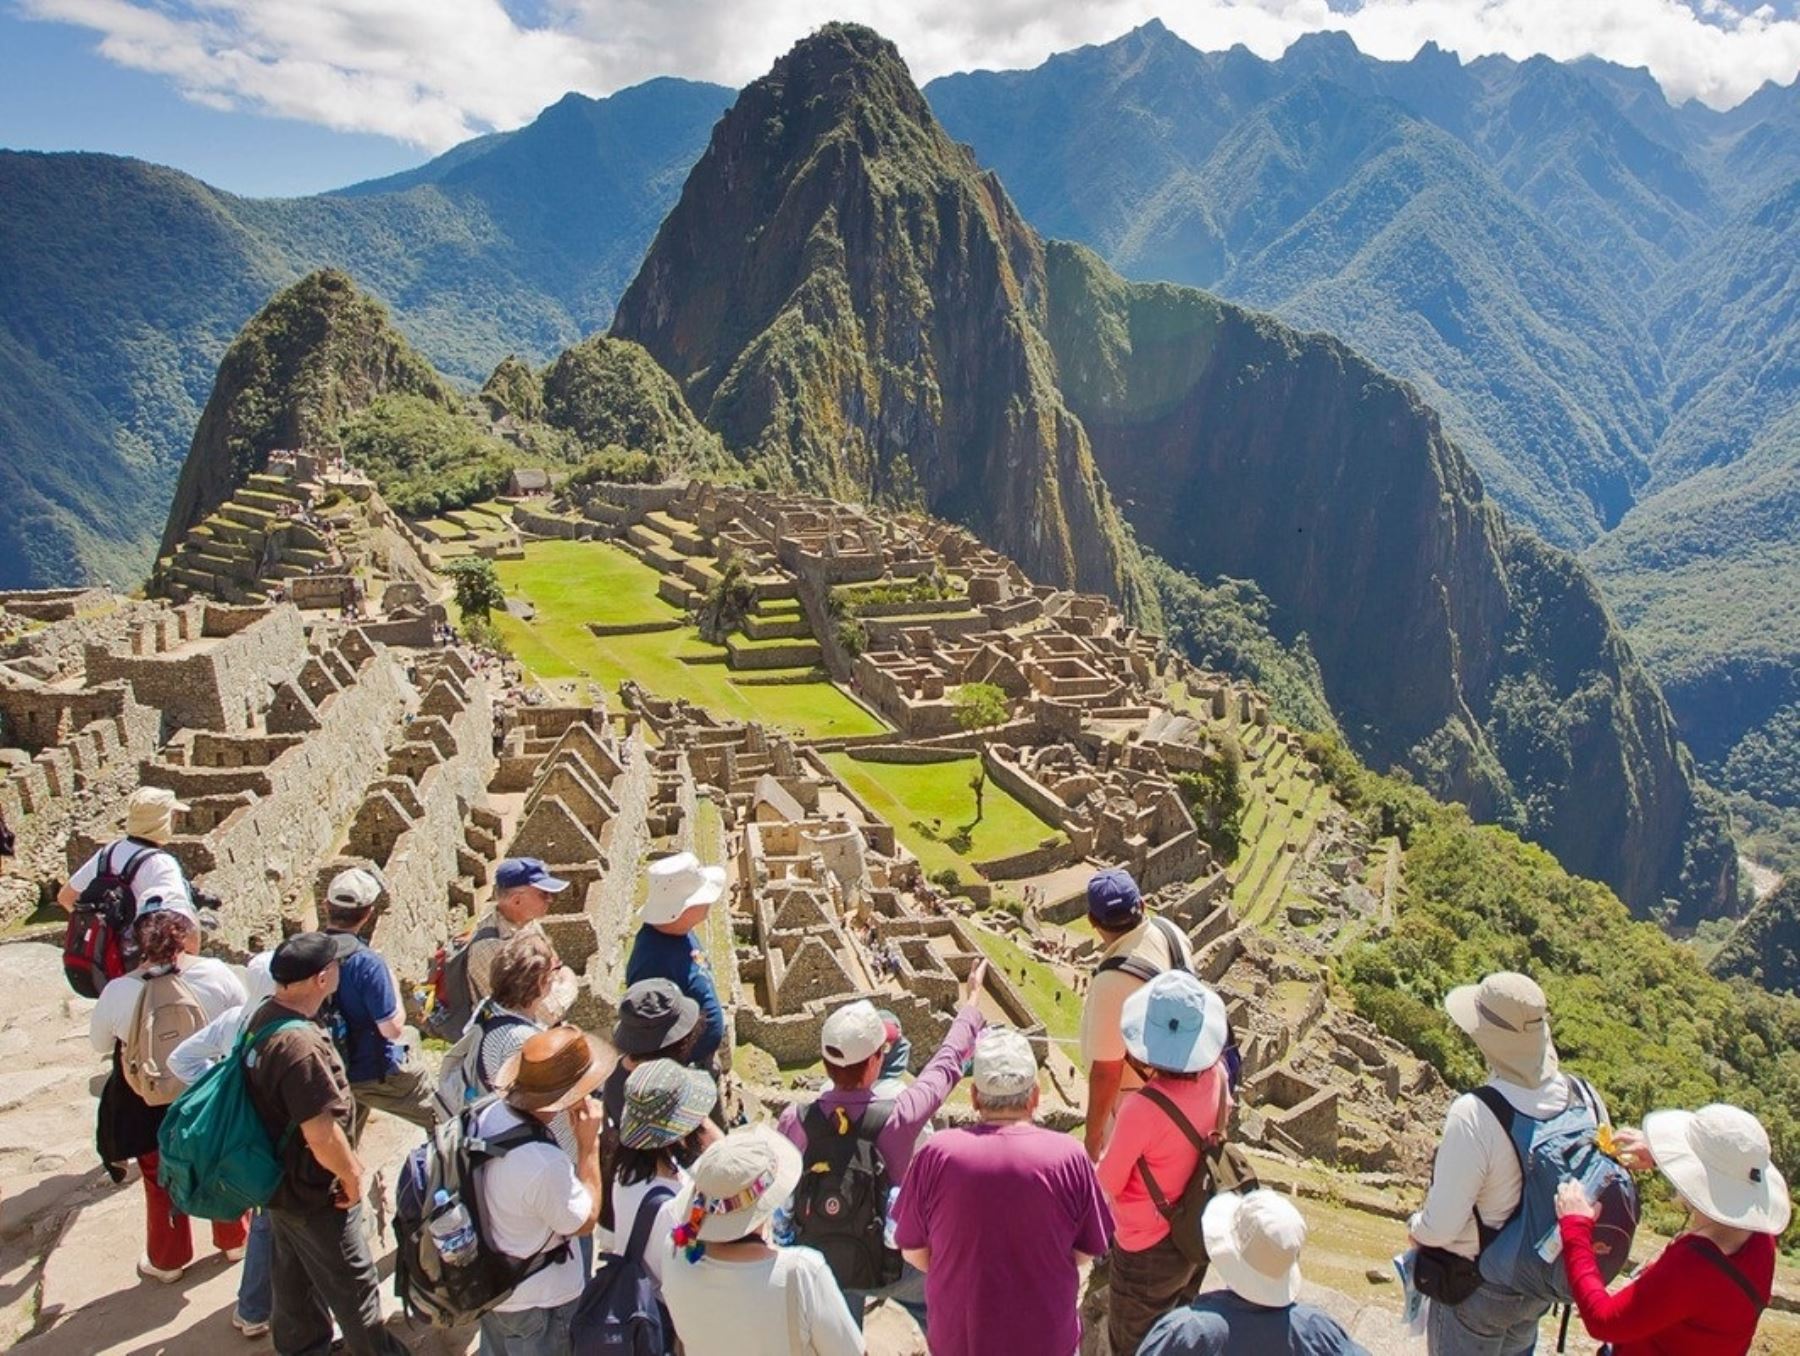 Capacidad de aforo de Machu Picchu llegó a su límite, ya no habrá más ampliación y solo se permitirá ingreso con boleto, informó el Ministerio de Cultura.Foto:  ANDINA/Difusión.